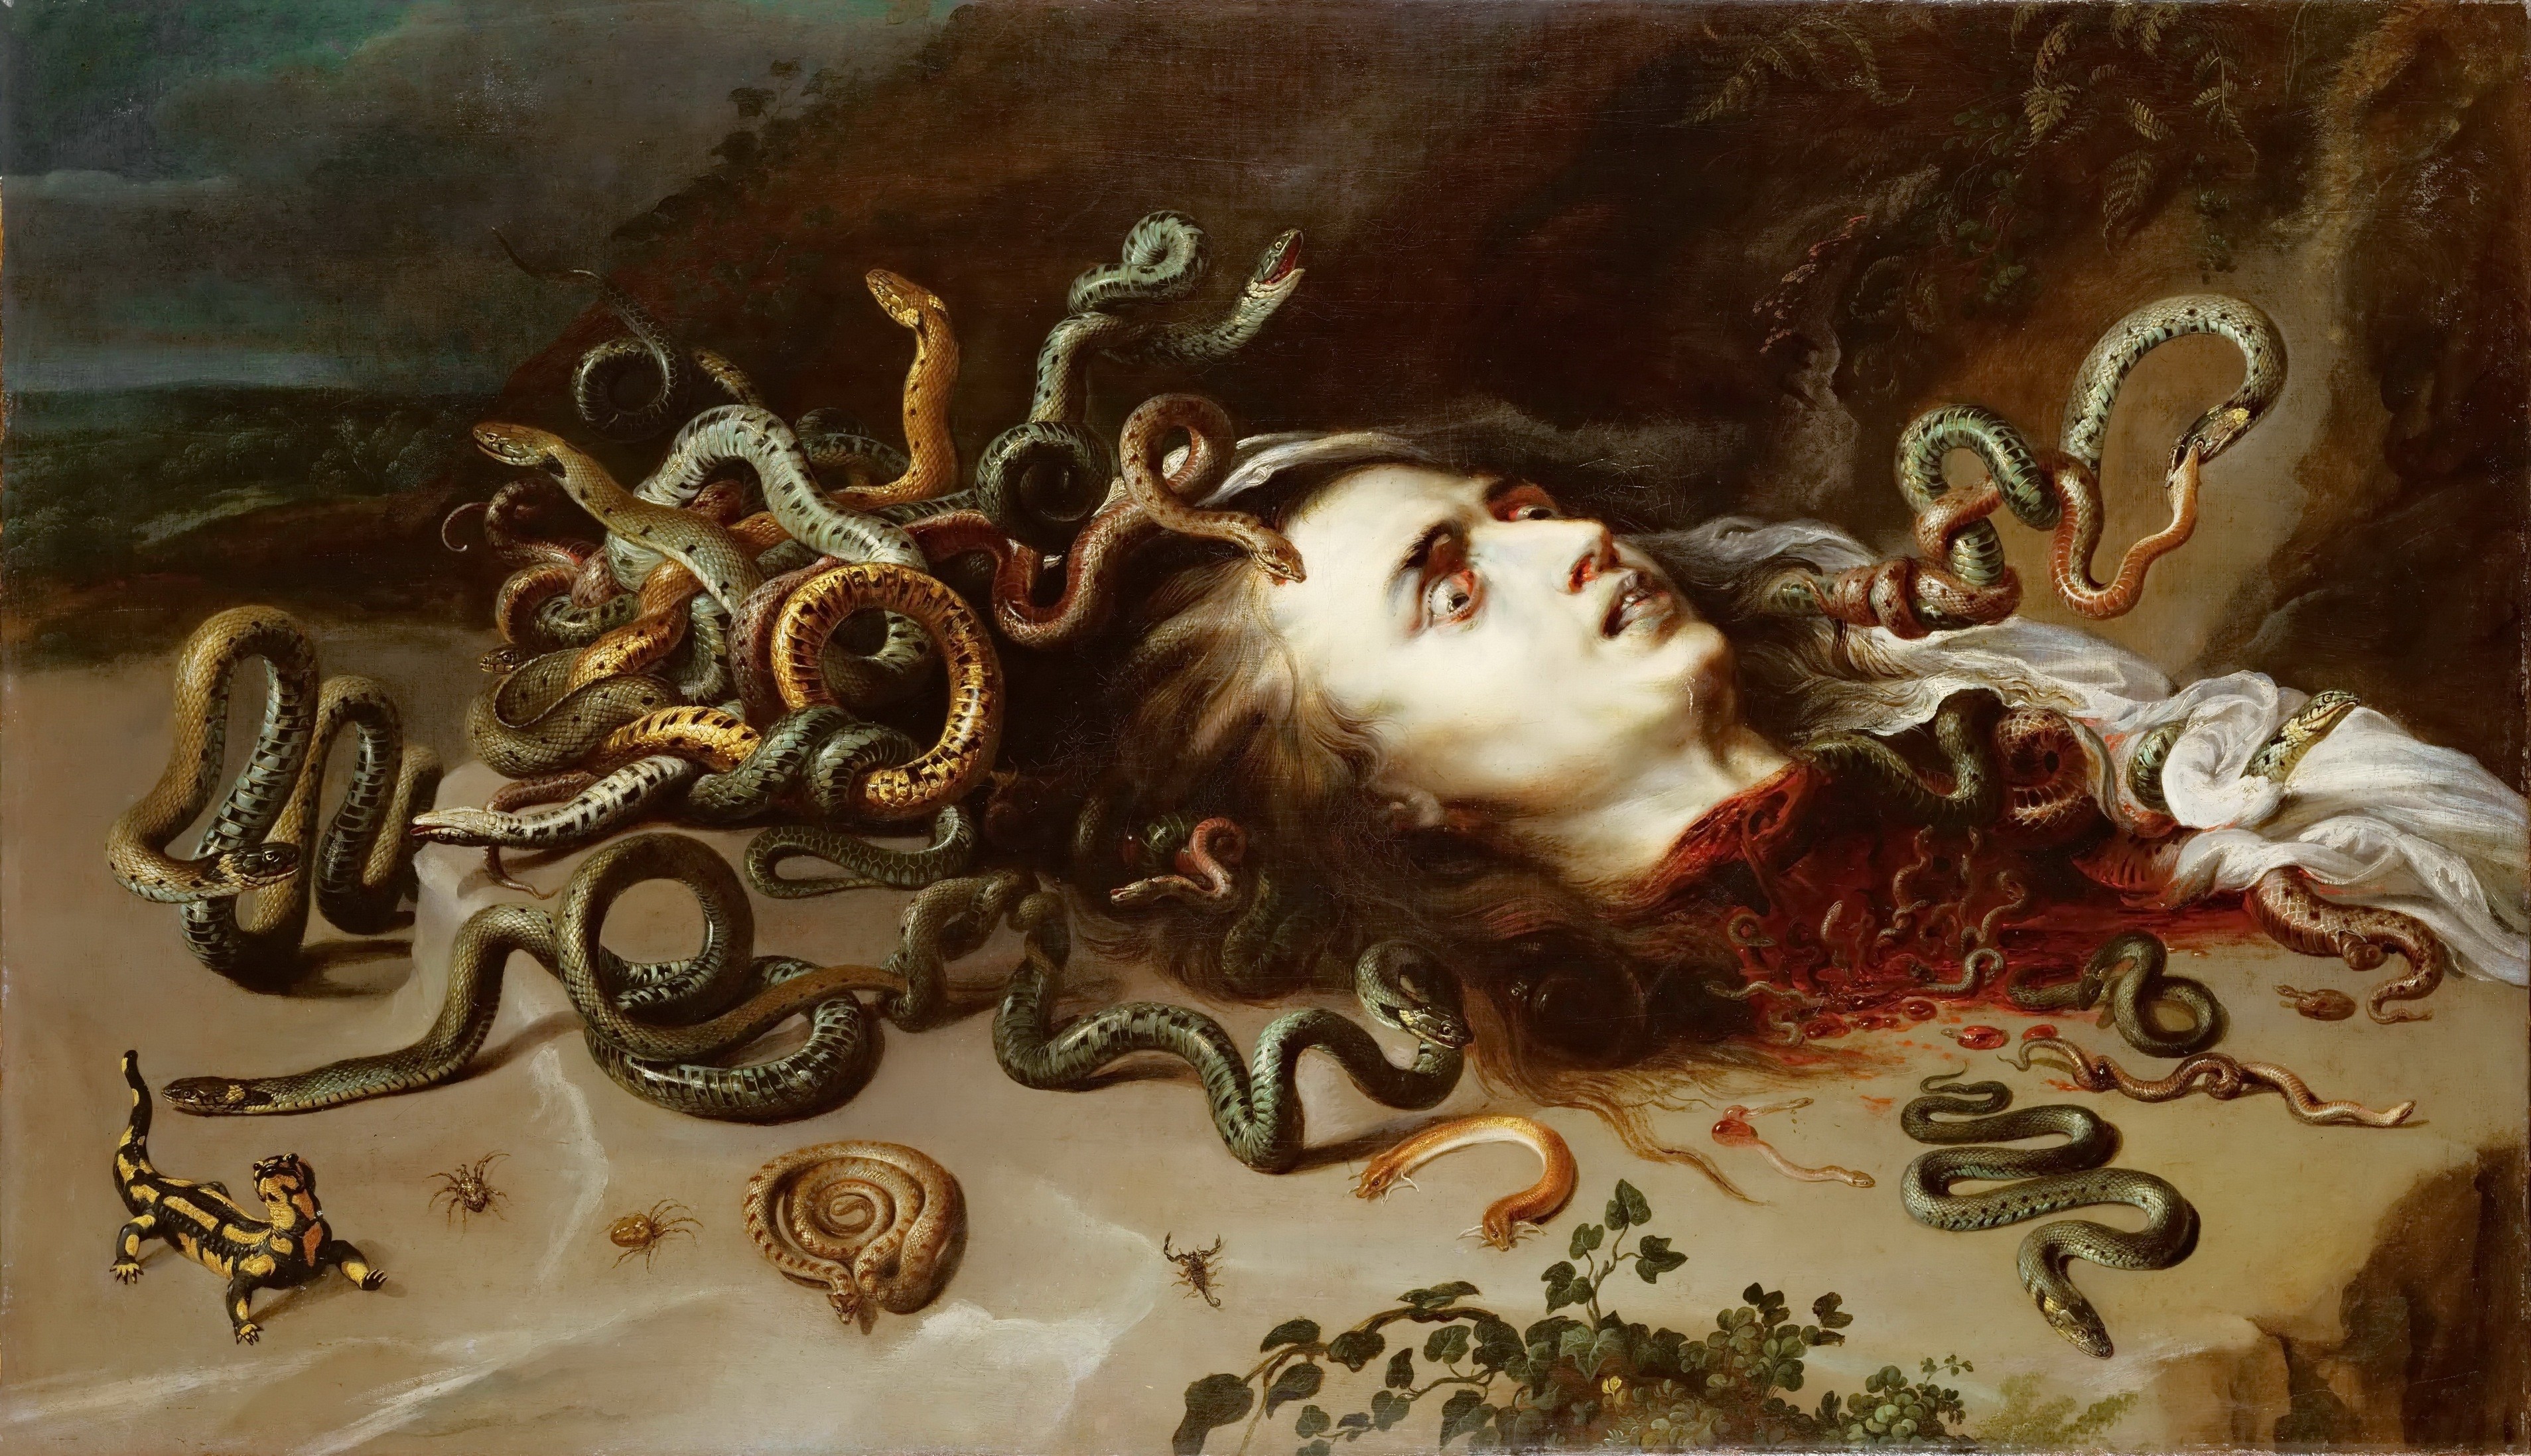 Por su naturaleza enigmática, la serpiente ha inspirado el temor desde la antigüedad. Aquí representada por Pedro Pablo Ruben en su obra 'Medusa' (1618).